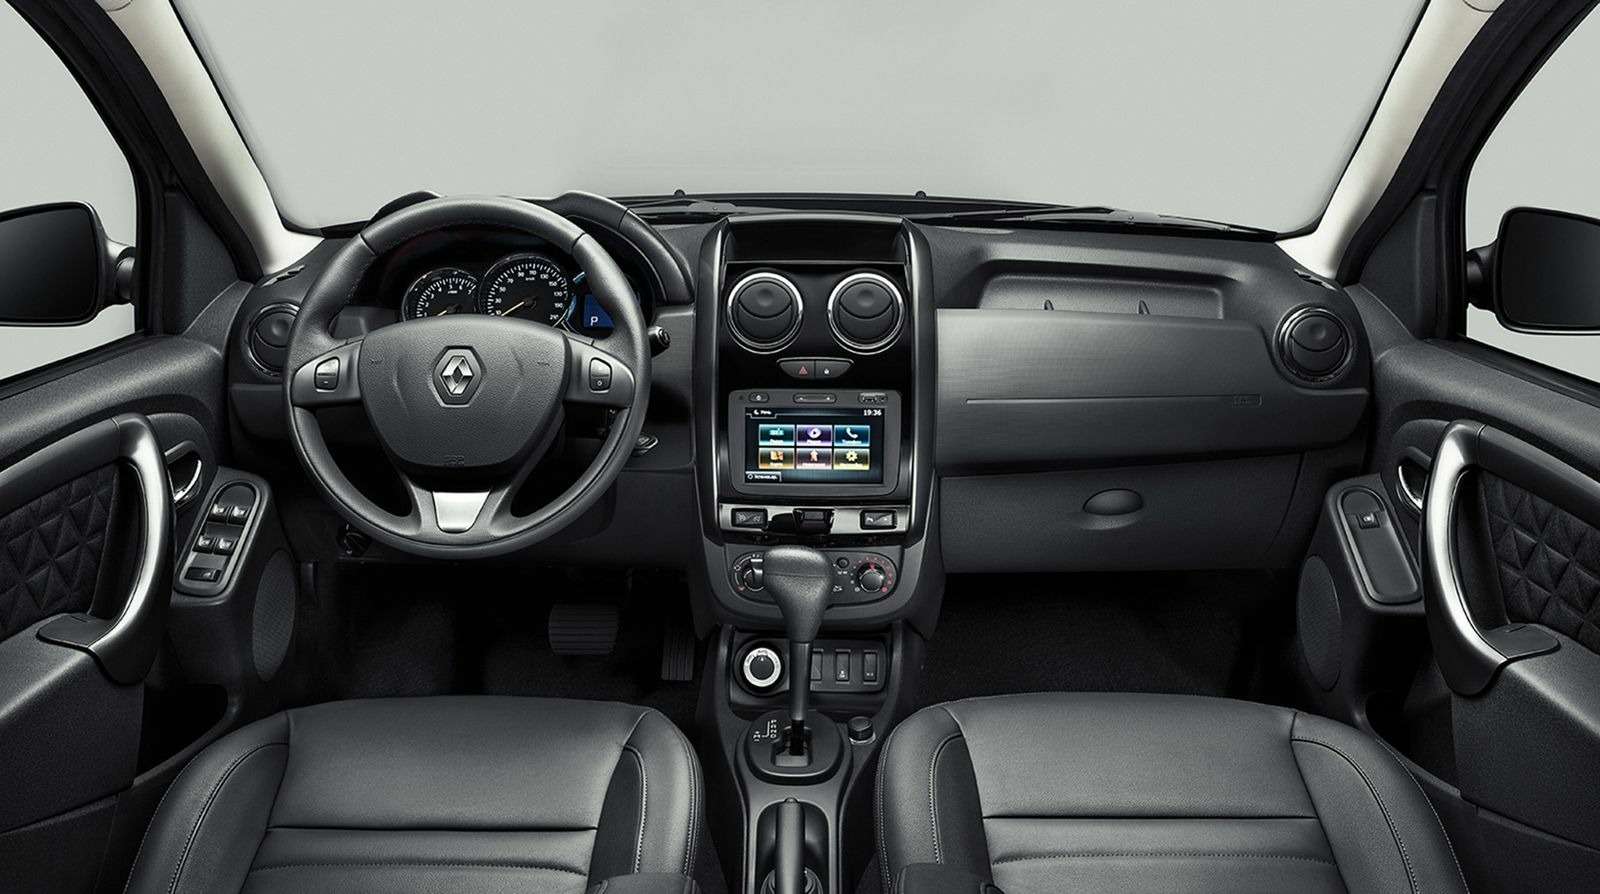 Renault удержала цены на Duster после обновления — фото 380539